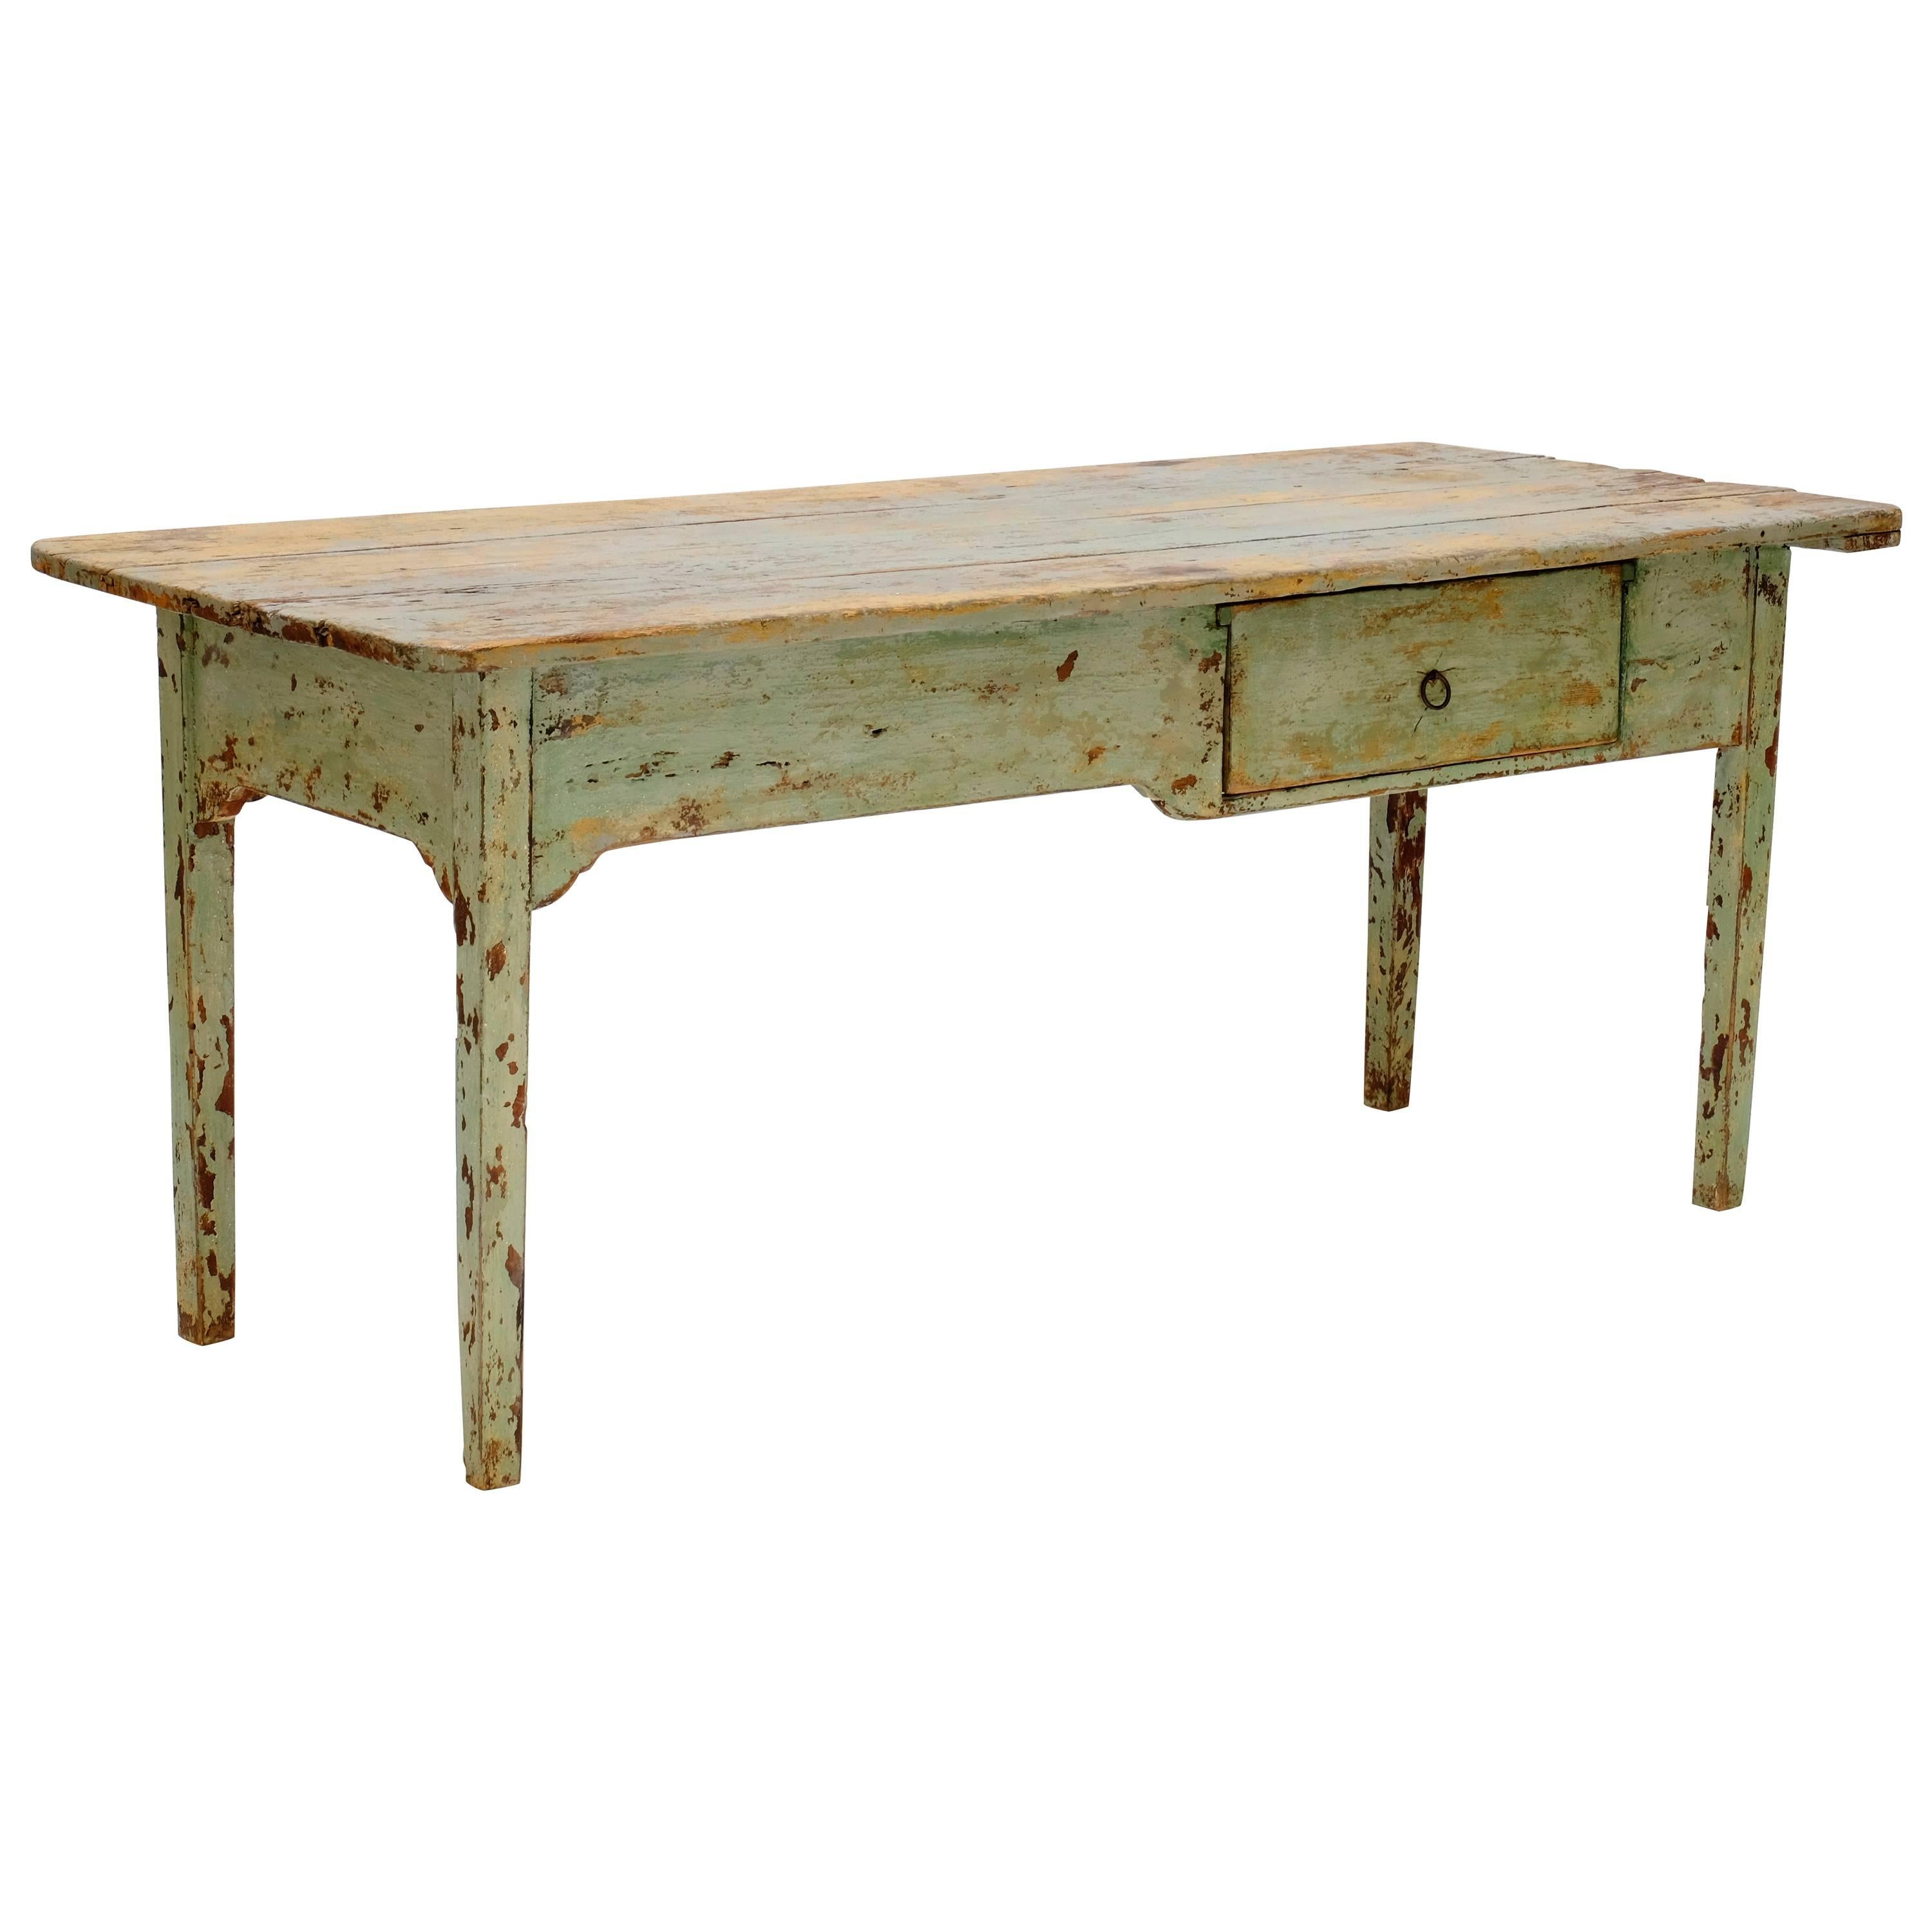 Early 19th Century Italian Farm Table For Sale